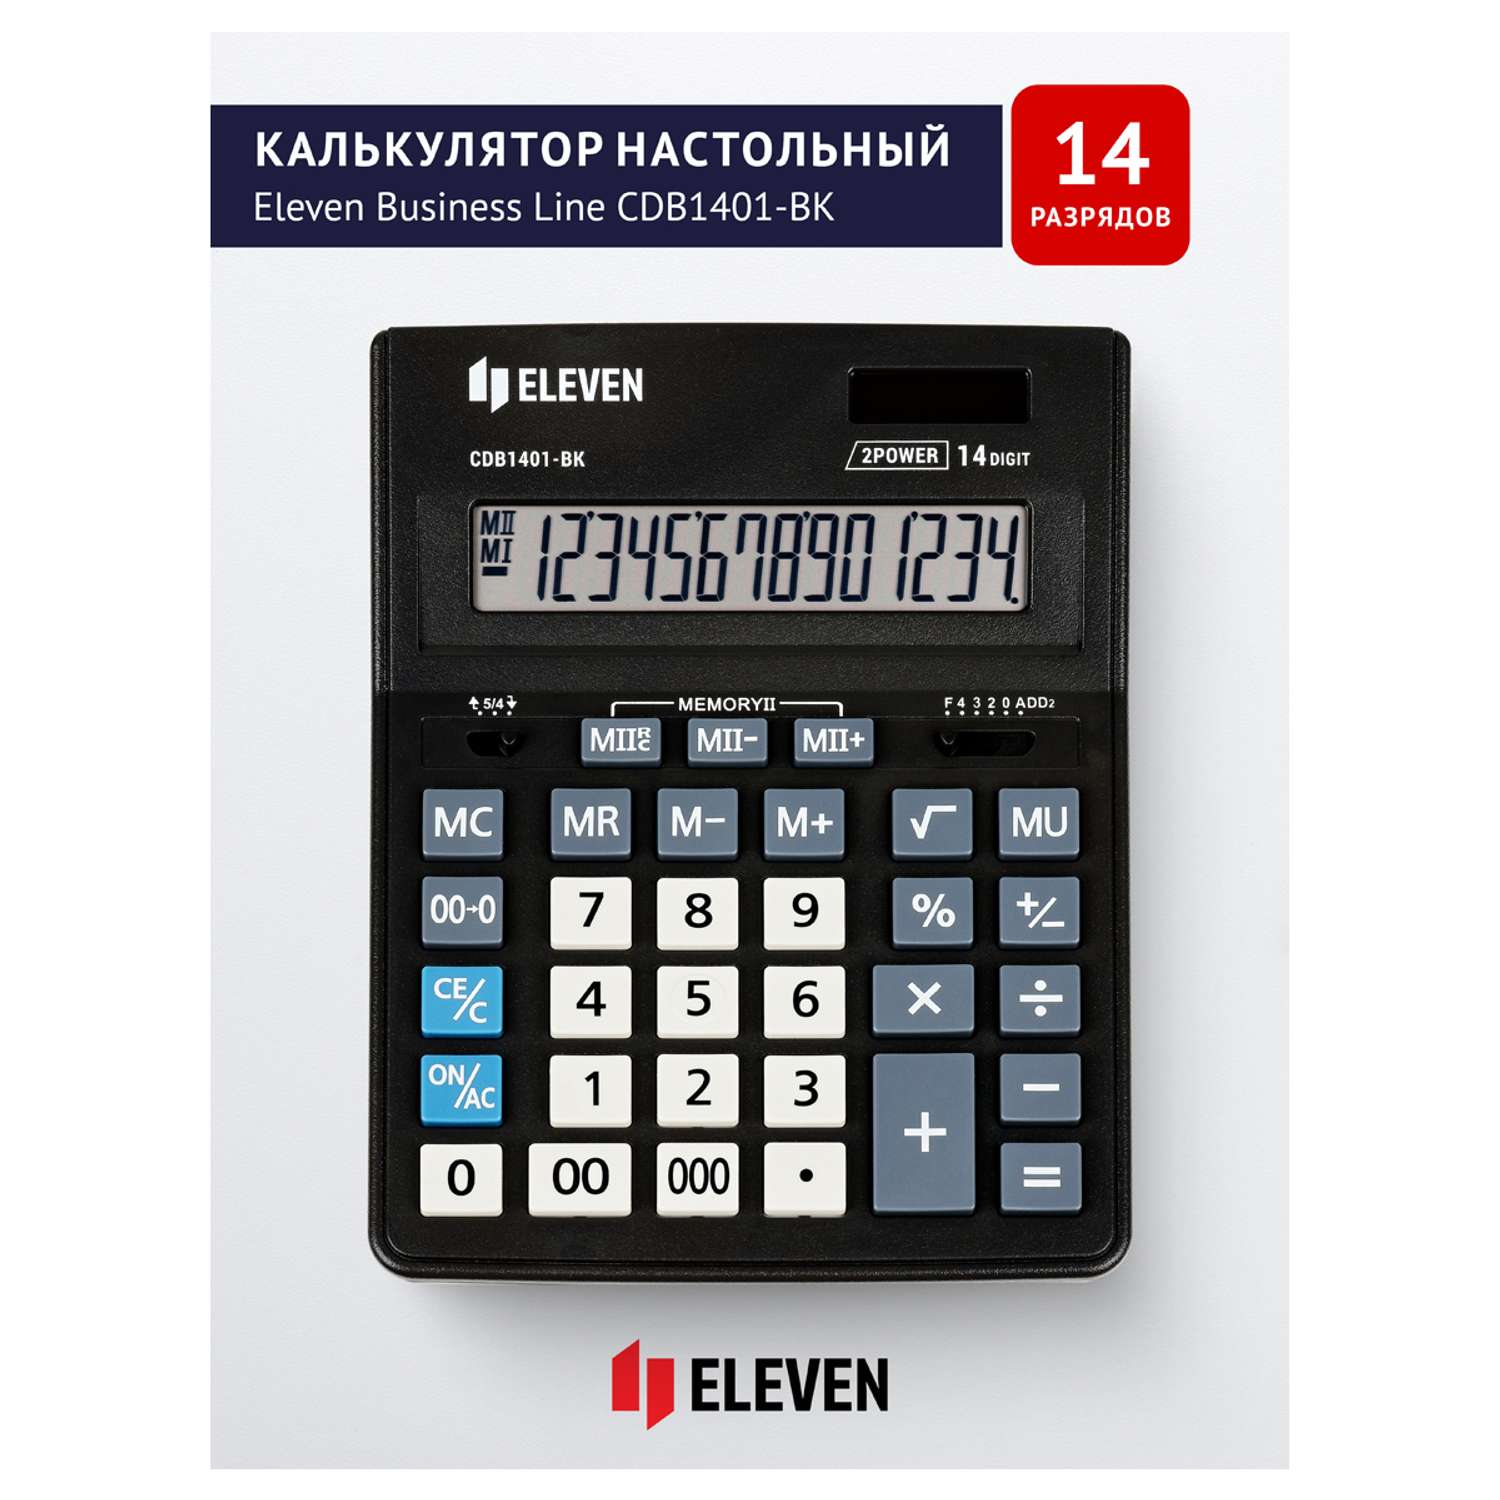 Калькулятор Eleven Business Line CDB1401-BK 14 разрядов двойное питание 155*205*35мм черный - фото 2